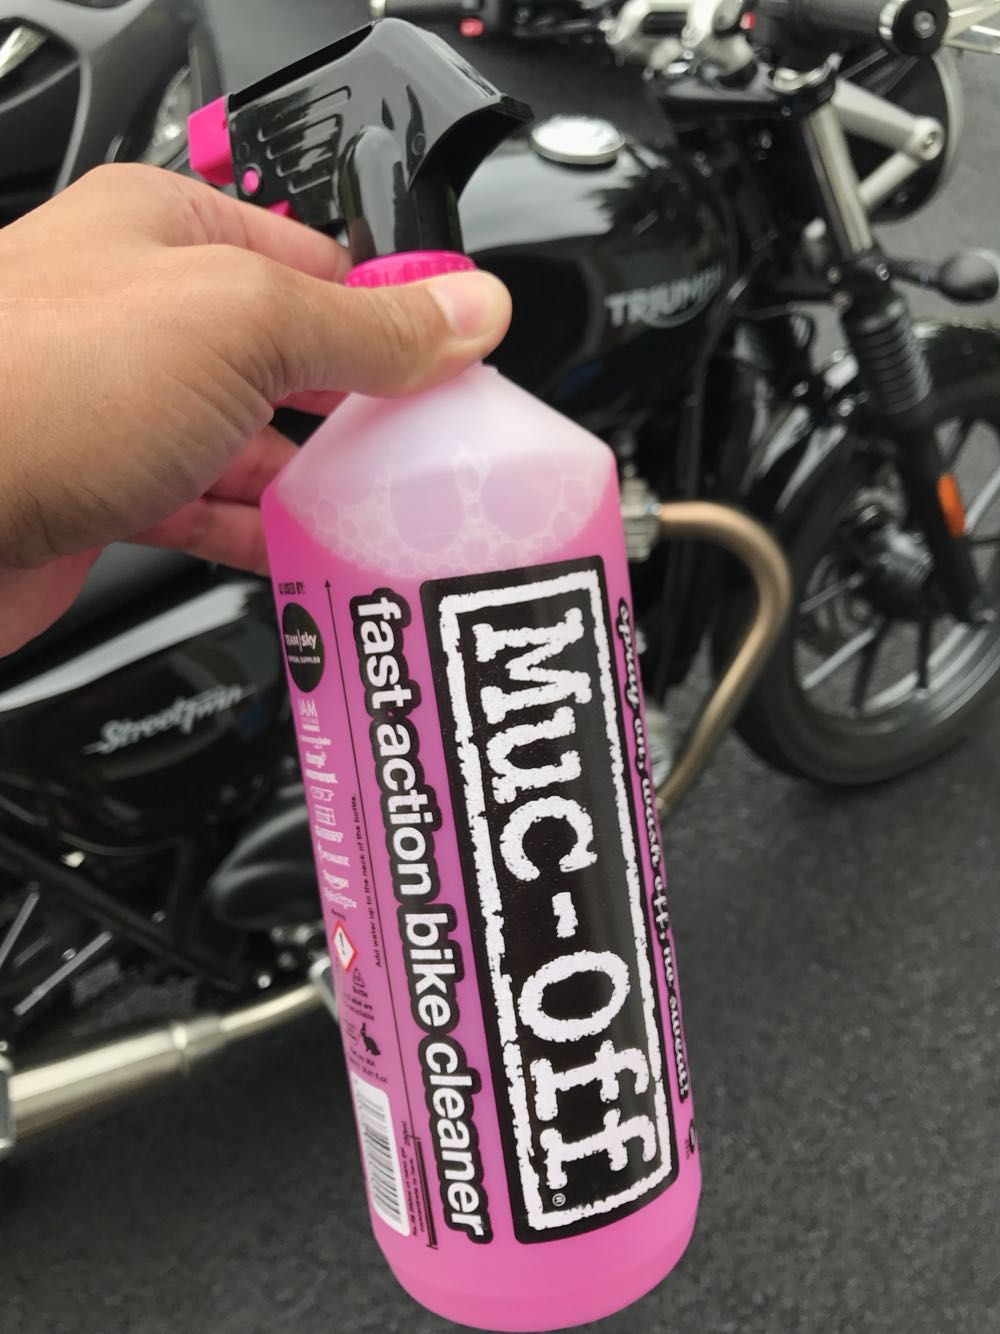 Muc-Off bike cleaner